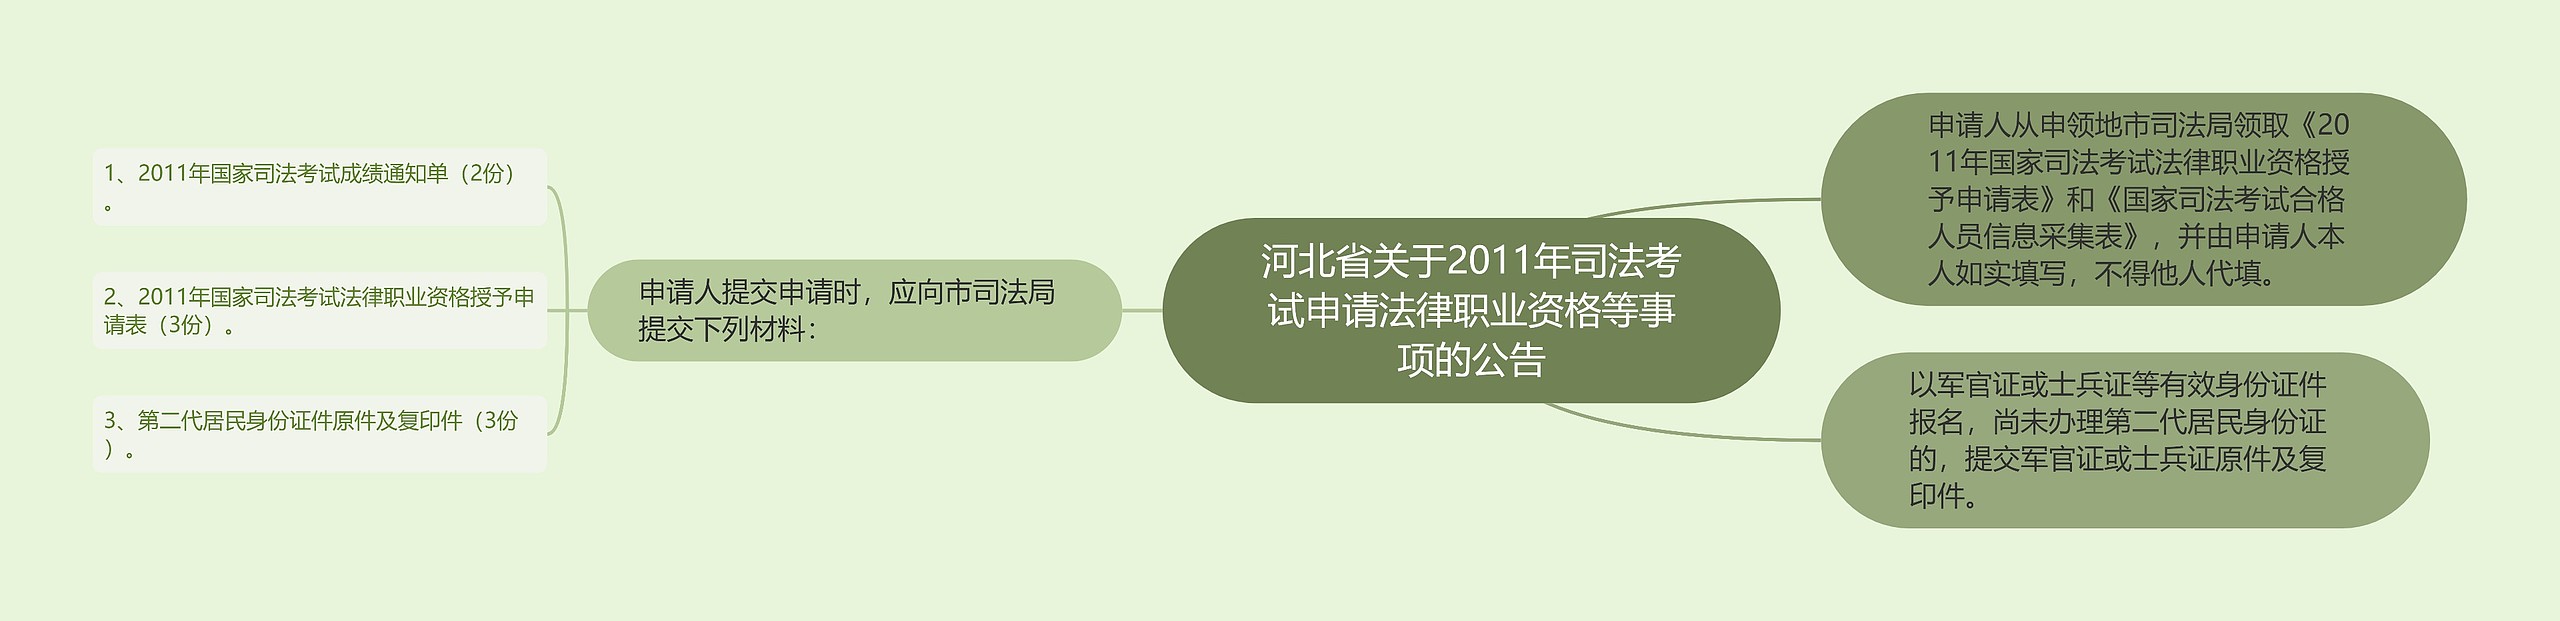 河北省关于2011年司法考试申请法律职业资格等事项的公告思维导图